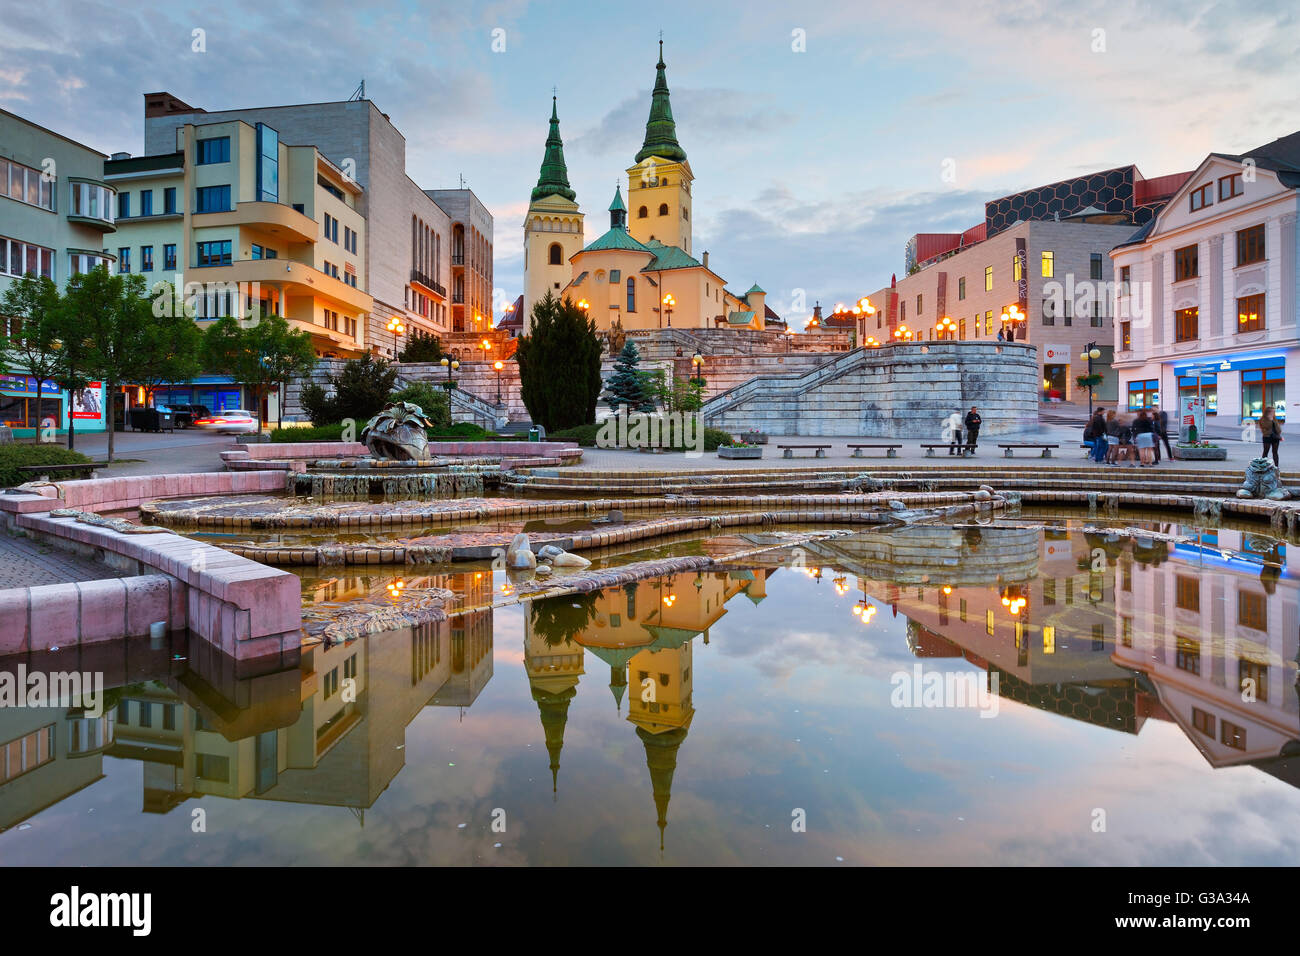 Piazza principale nella città di Zilina in Slovacchia centrale. Foto Stock